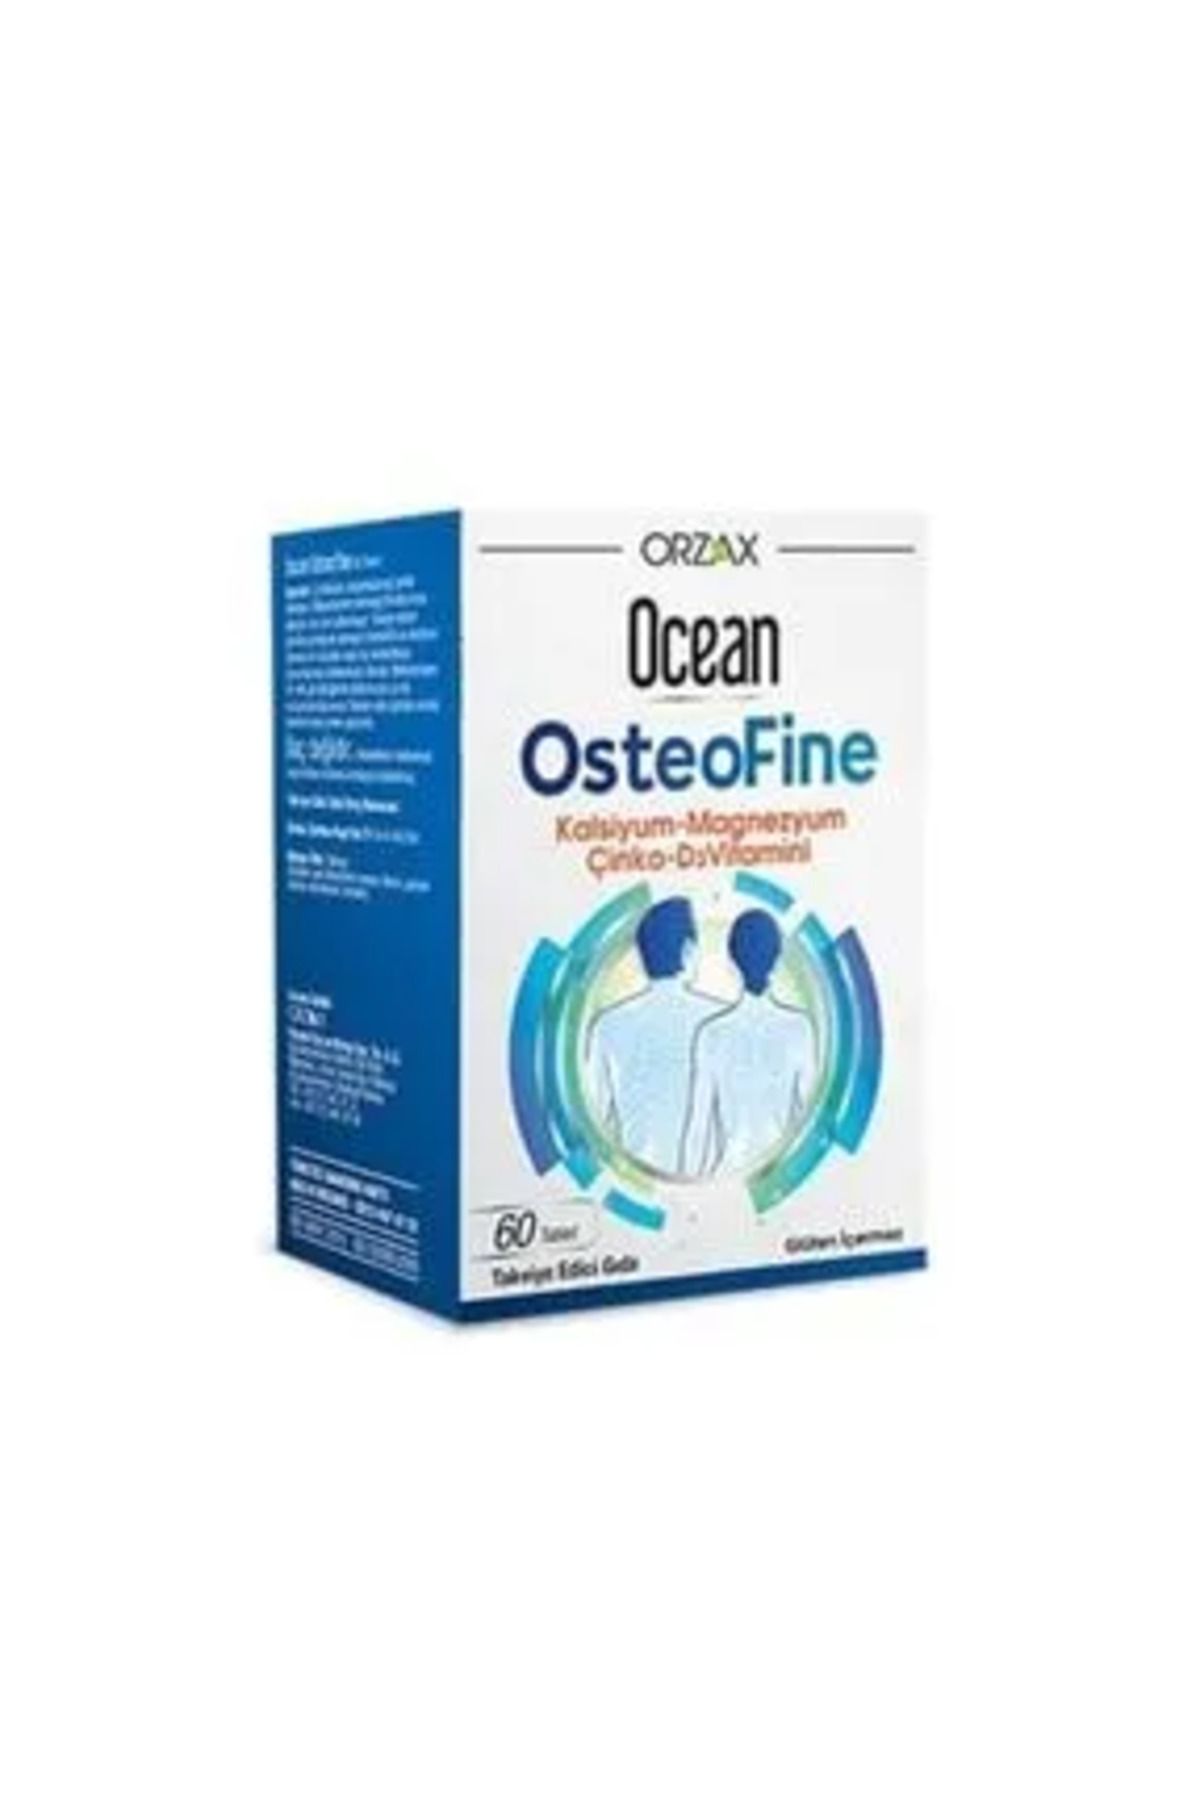 Ocean Ocean Osteofine 60 Tablet